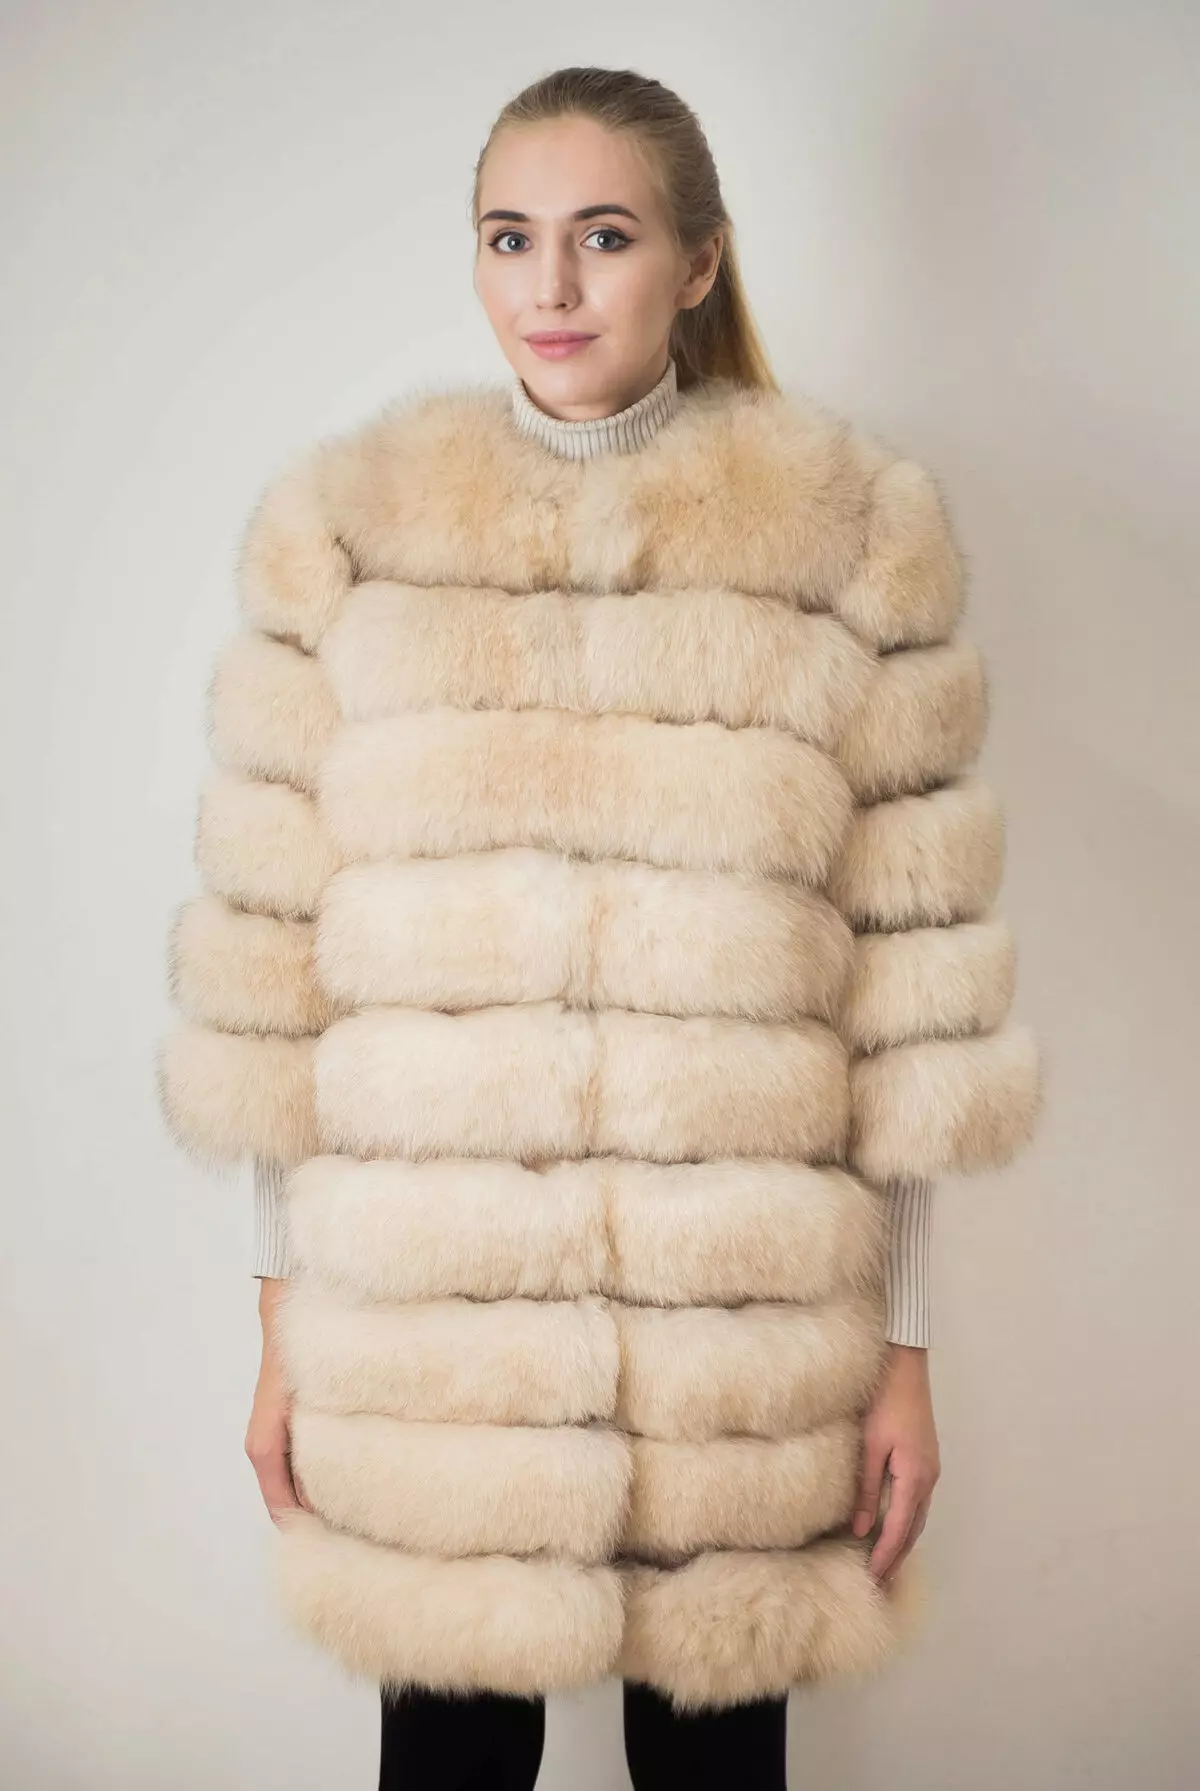 Sweet Fox Fur Coat 34 Billeder: Moderigtige mønstre af Sandsale Transversale Pelsfrakker, Hooded 693_11